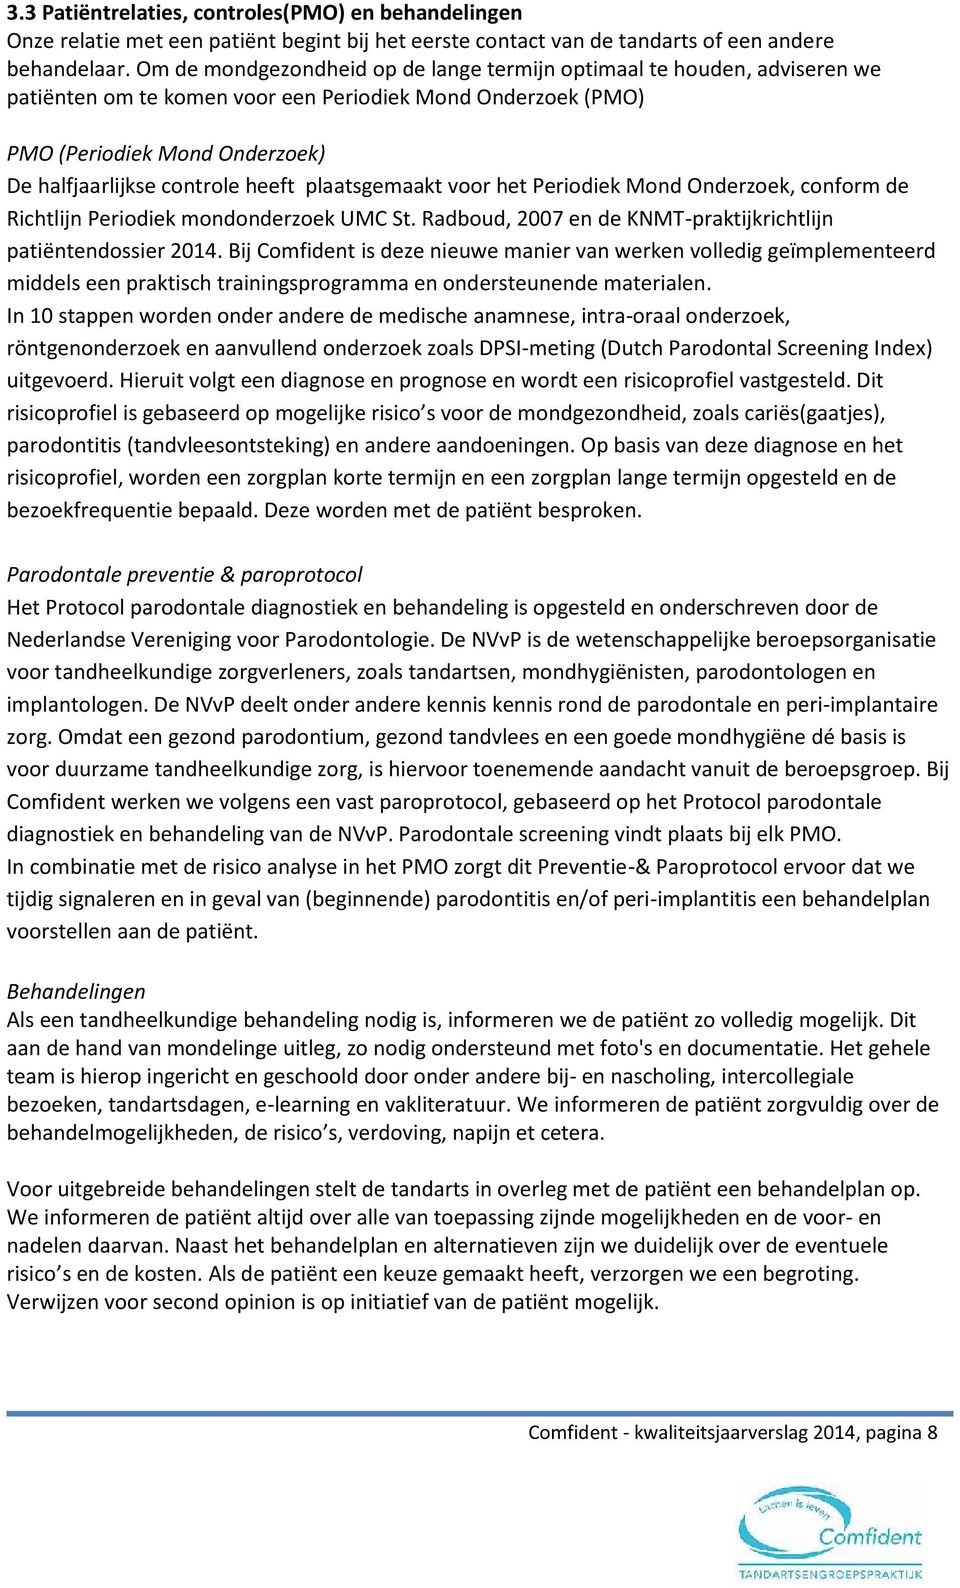 plaatsgemaakt voor het Periodiek Mond Onderzoek, conform de Richtlijn Periodiek mondonderzoek UMC St. Radboud, 2007 en de KNMT-praktijkrichtlijn patiëntendossier 2014.